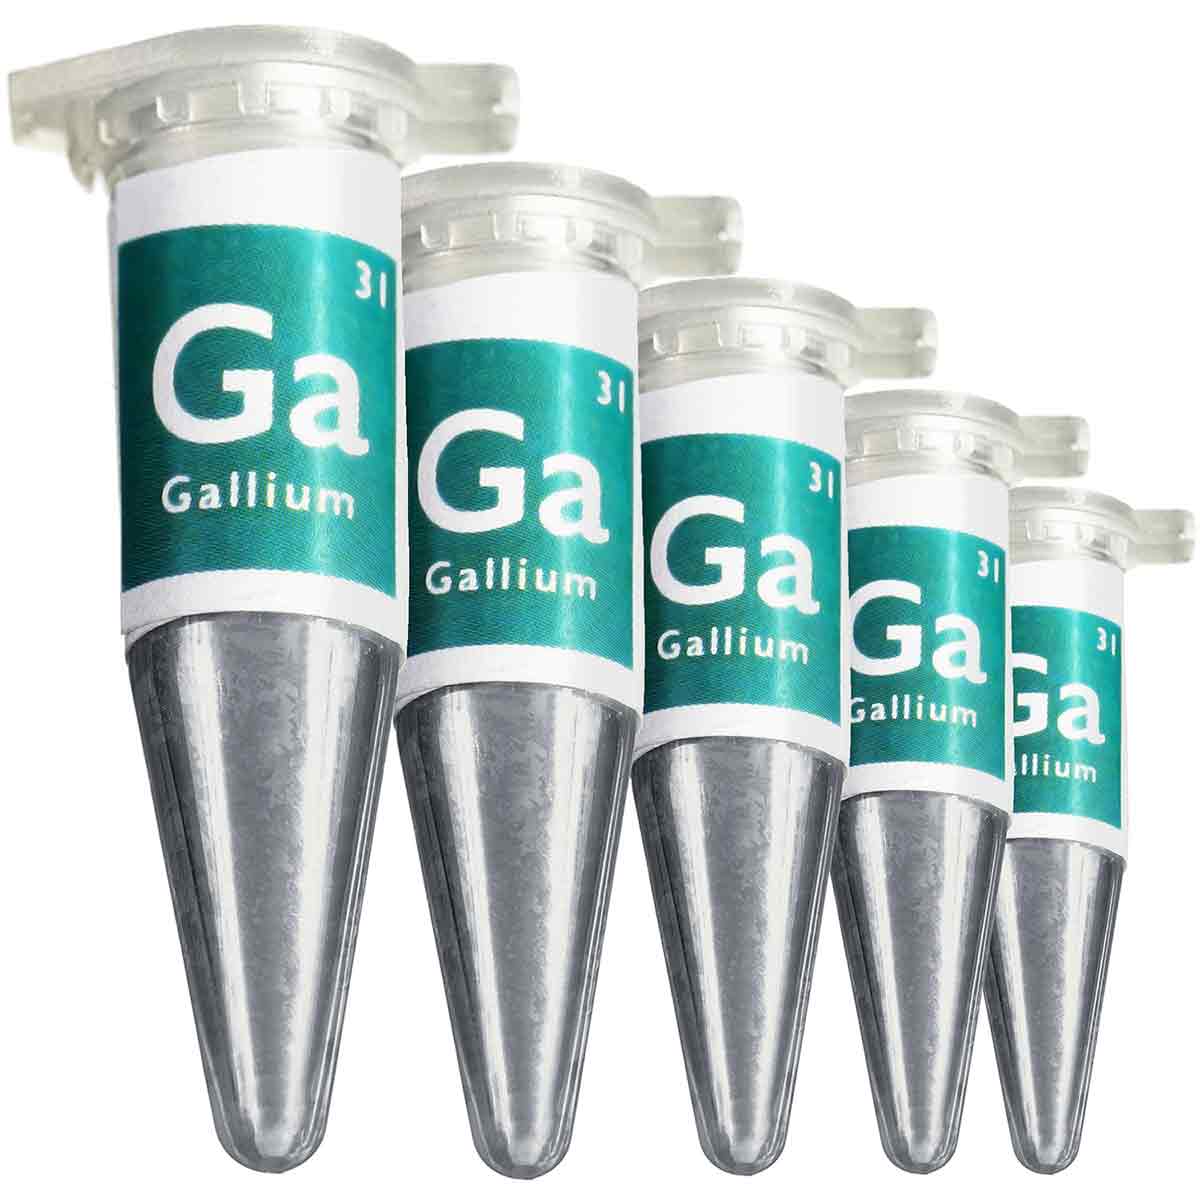 Gallium 99.99% 4N Ga 31 liquid metal (a 7.5g)